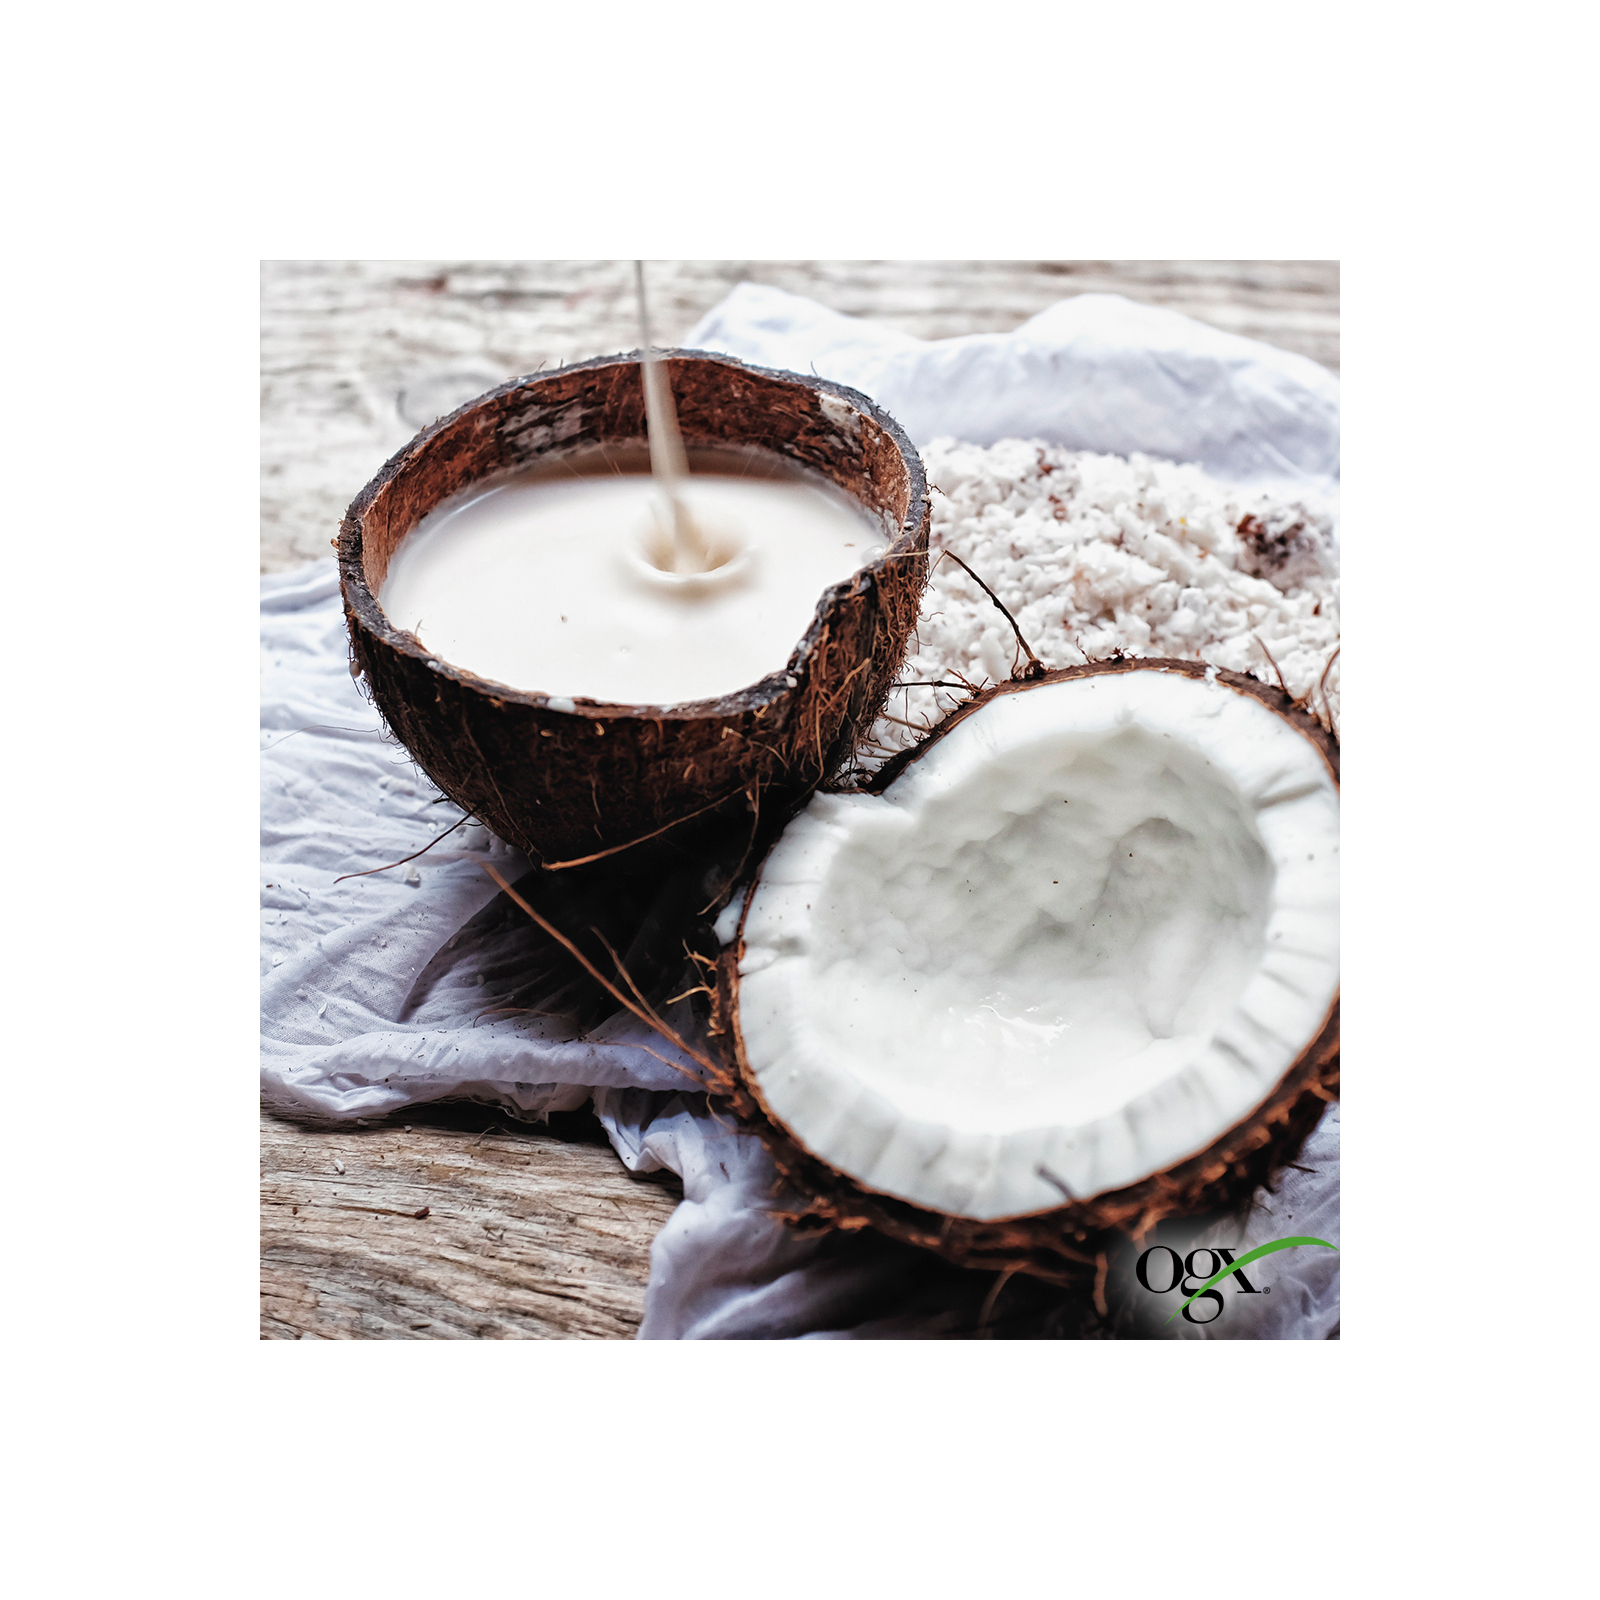 Сыворотка для волос OGX Coconut Milk Питательная против ломкости с кокосовым молоком 100 мл (0022796970084) изображение 7